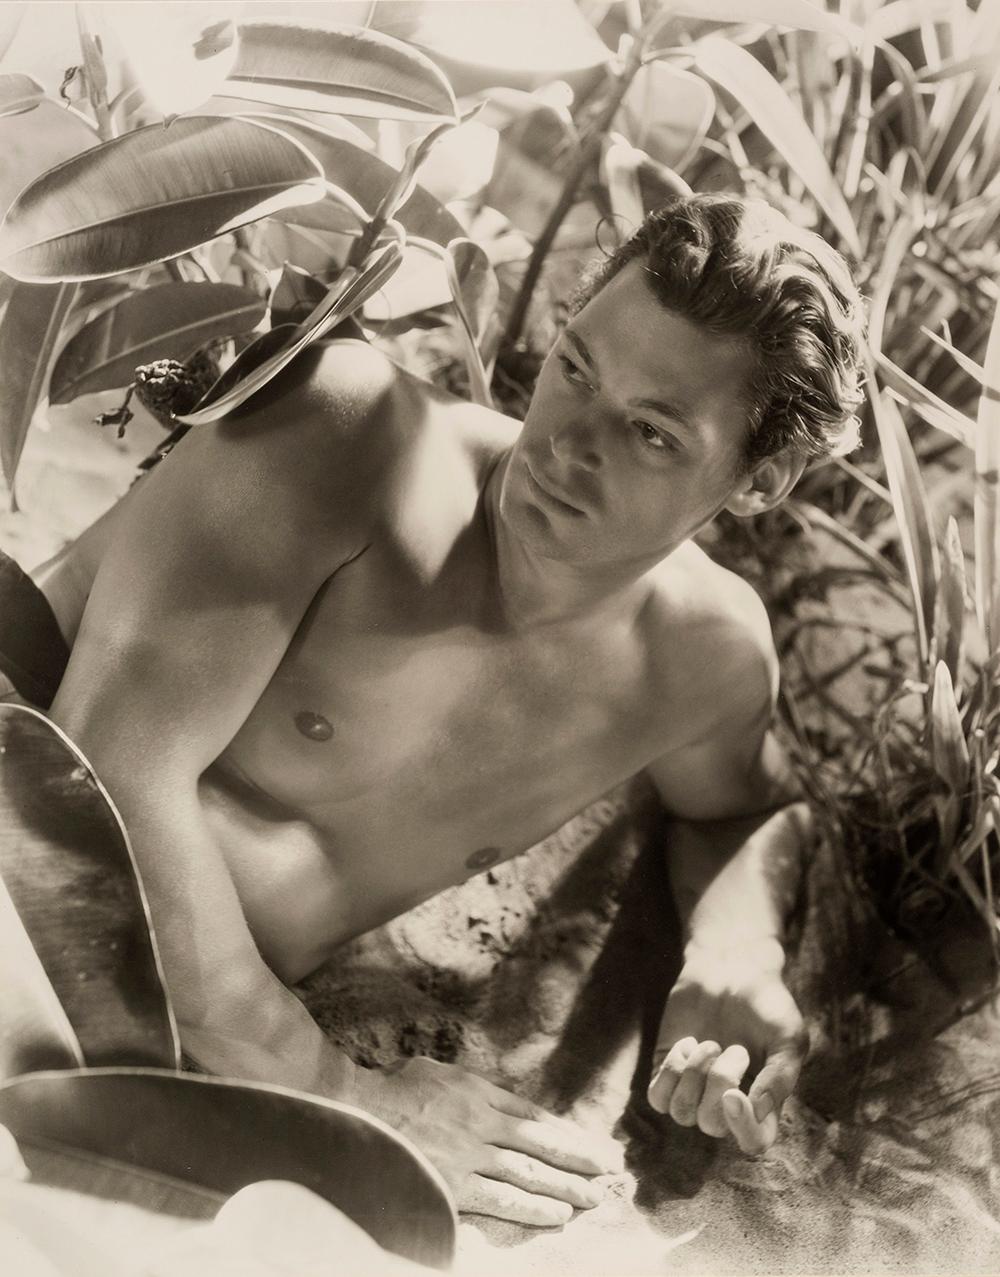 Johnny Weissmuller, 1932  - Cecil Beaton (Modeporträtfotografie)
Signiert auf der Vorderseite des Passepartouts
Auf der Rückseite des Passepartouts mit dem Tintenstempel des Fotostudios gestempelt
Silbergelatineabzug, gedruckt 1970er Jahre
22 x 17